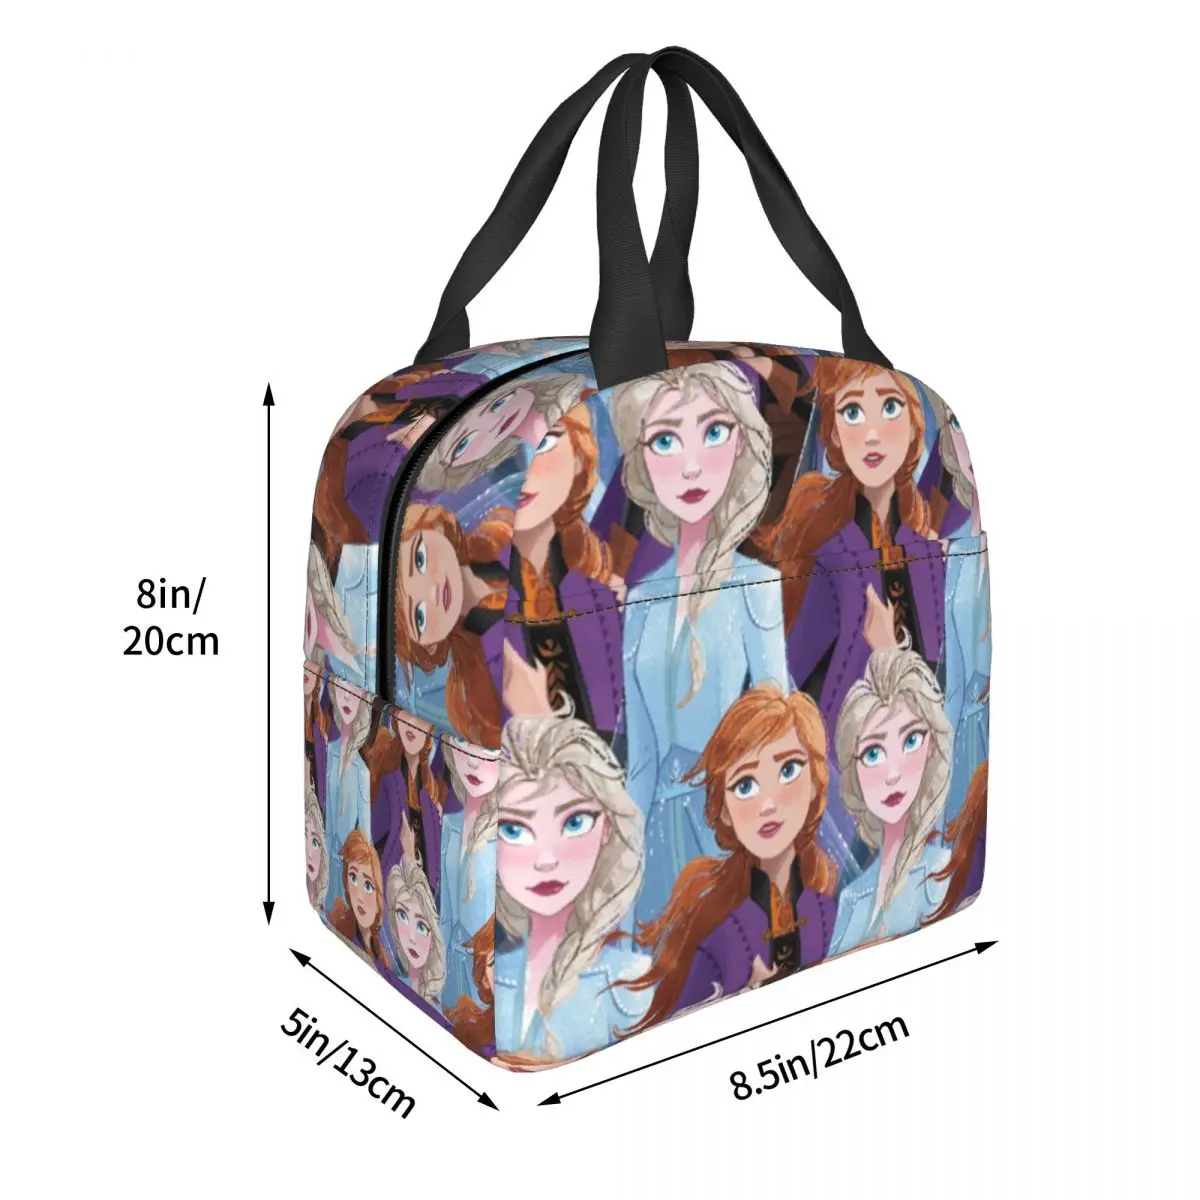 Disney Frozen Elsa Anna Изолированные сумки для ланча большой емкости Многоразовая сумка-холодильник Ланч-бокс Тотализатор Офис Путешествия Мужчины Женщины . ' - ' . 5